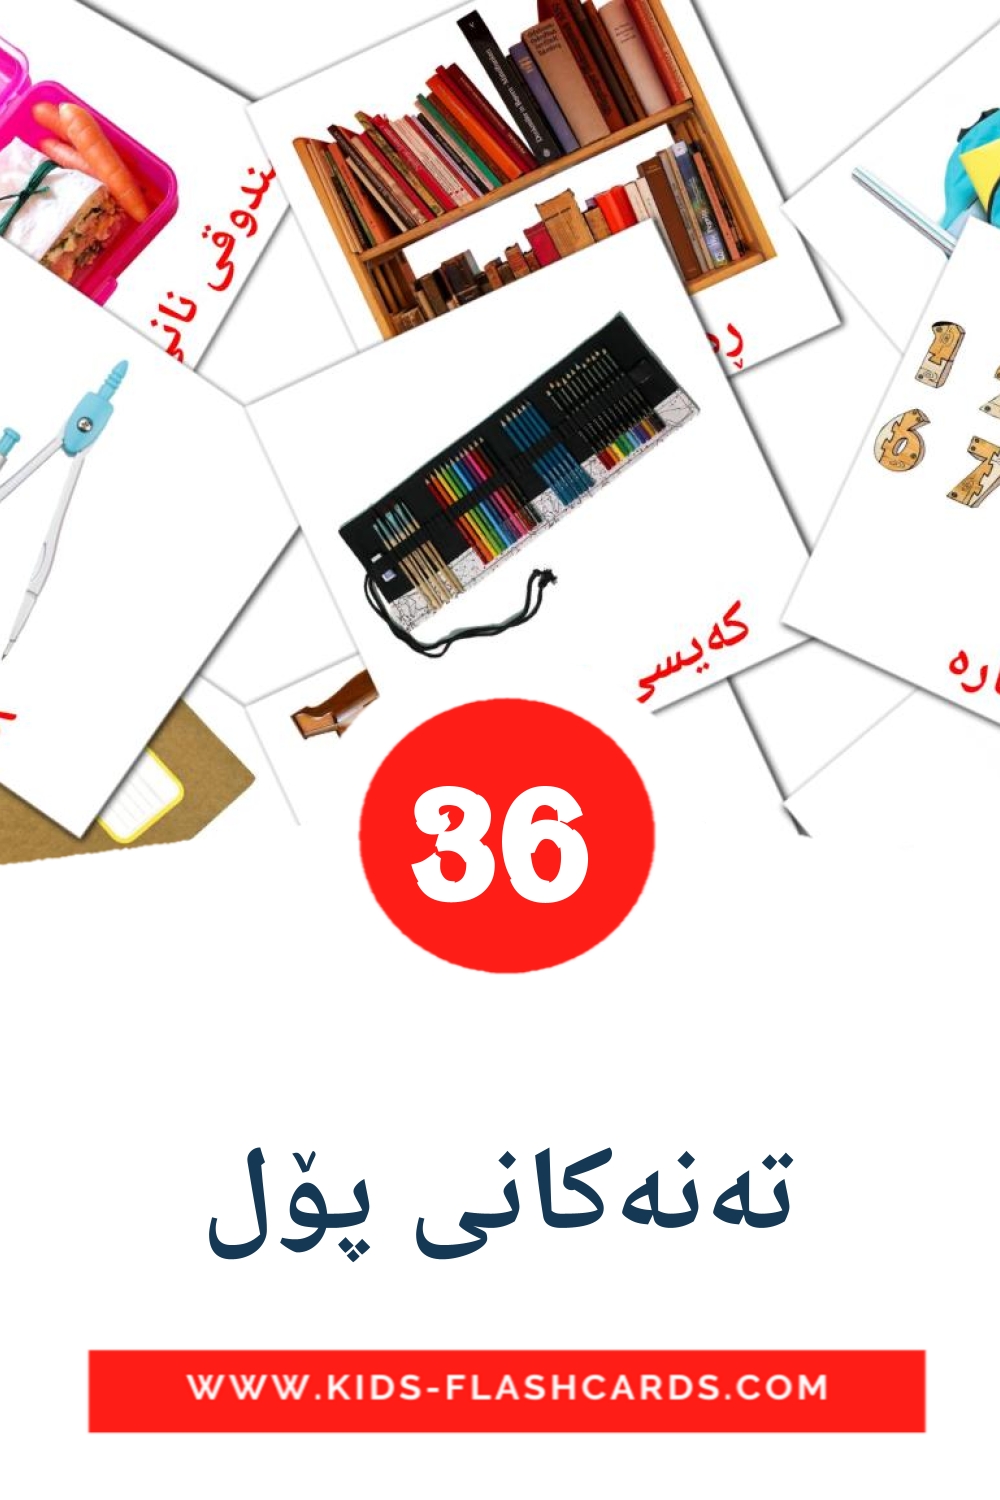 36 Cartões com Imagens de تەنەکانی پۆل para Jardim de Infância em curdo(sorani)